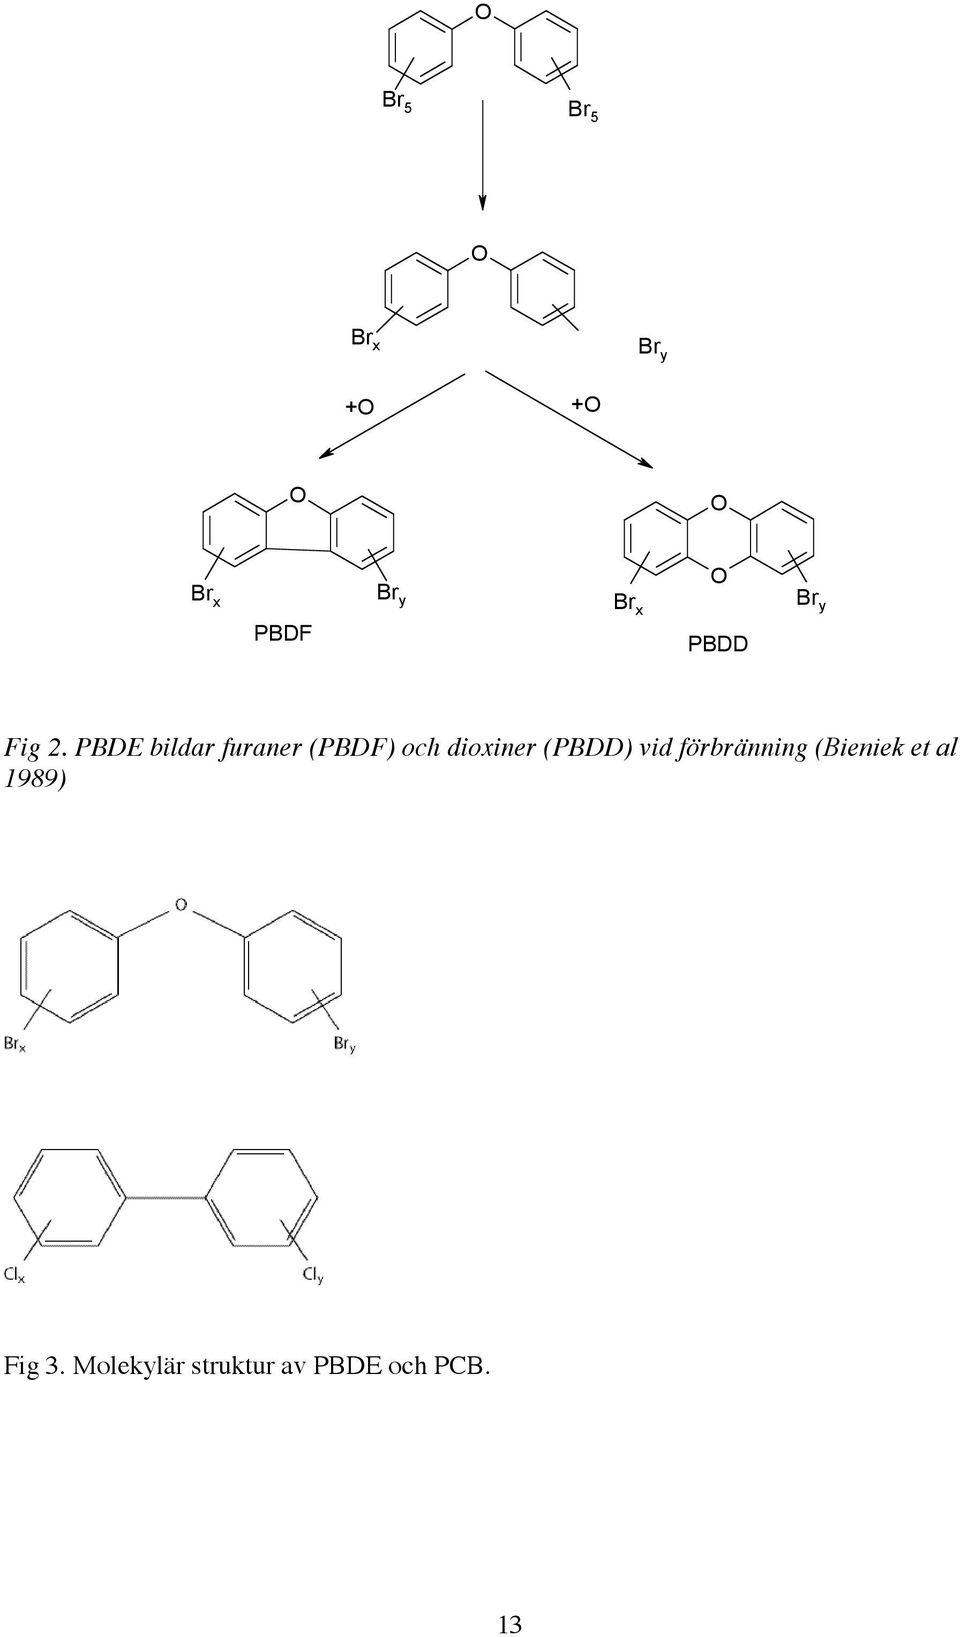 PBDE bildar furaner (PBDF) och dioxiner (PBDD) vid